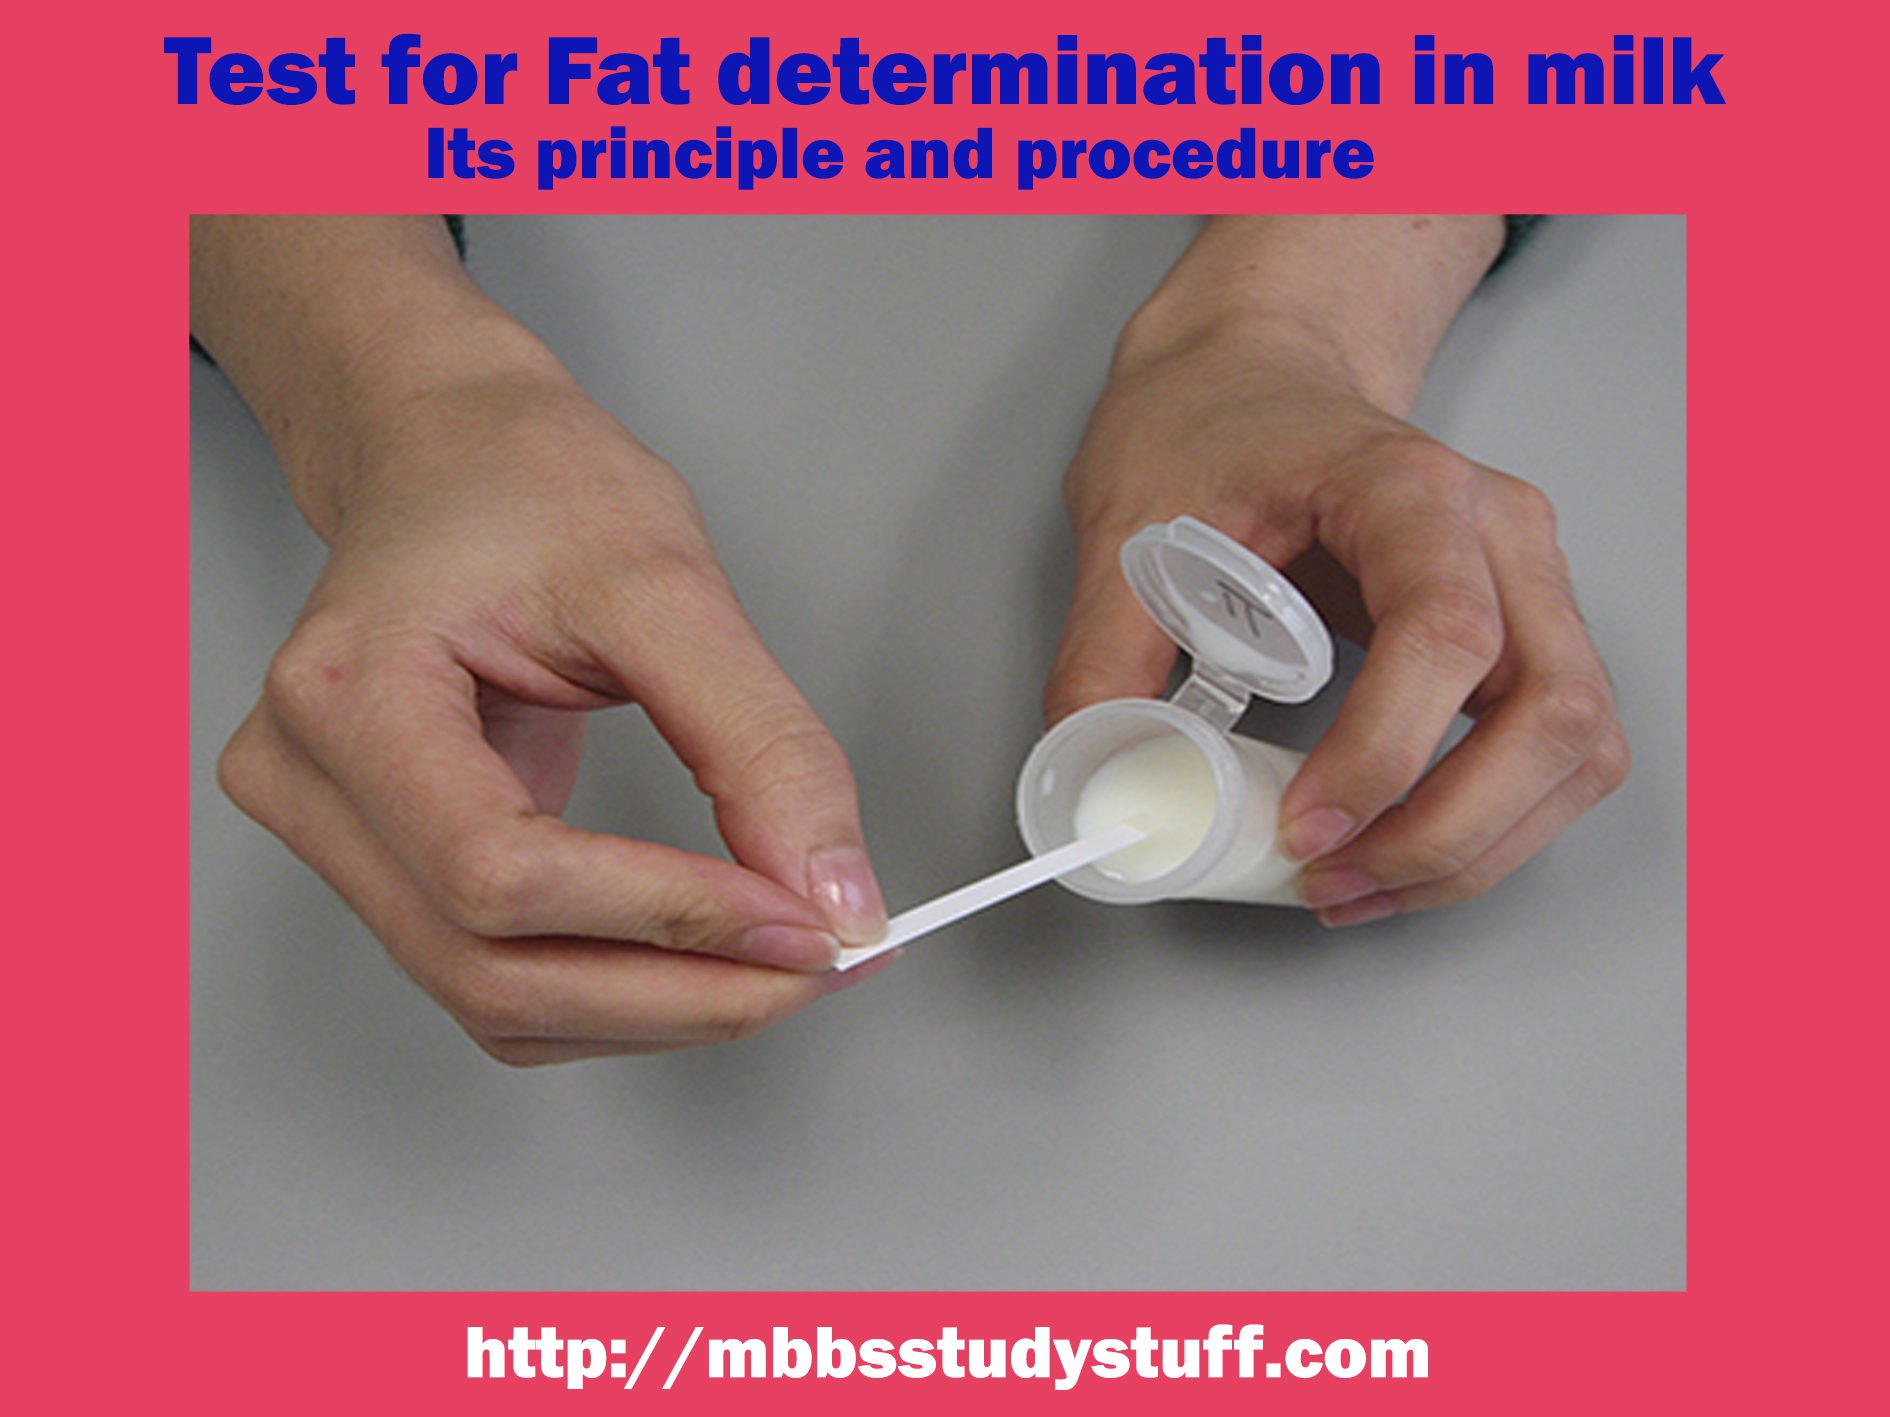 Fat determination in milk